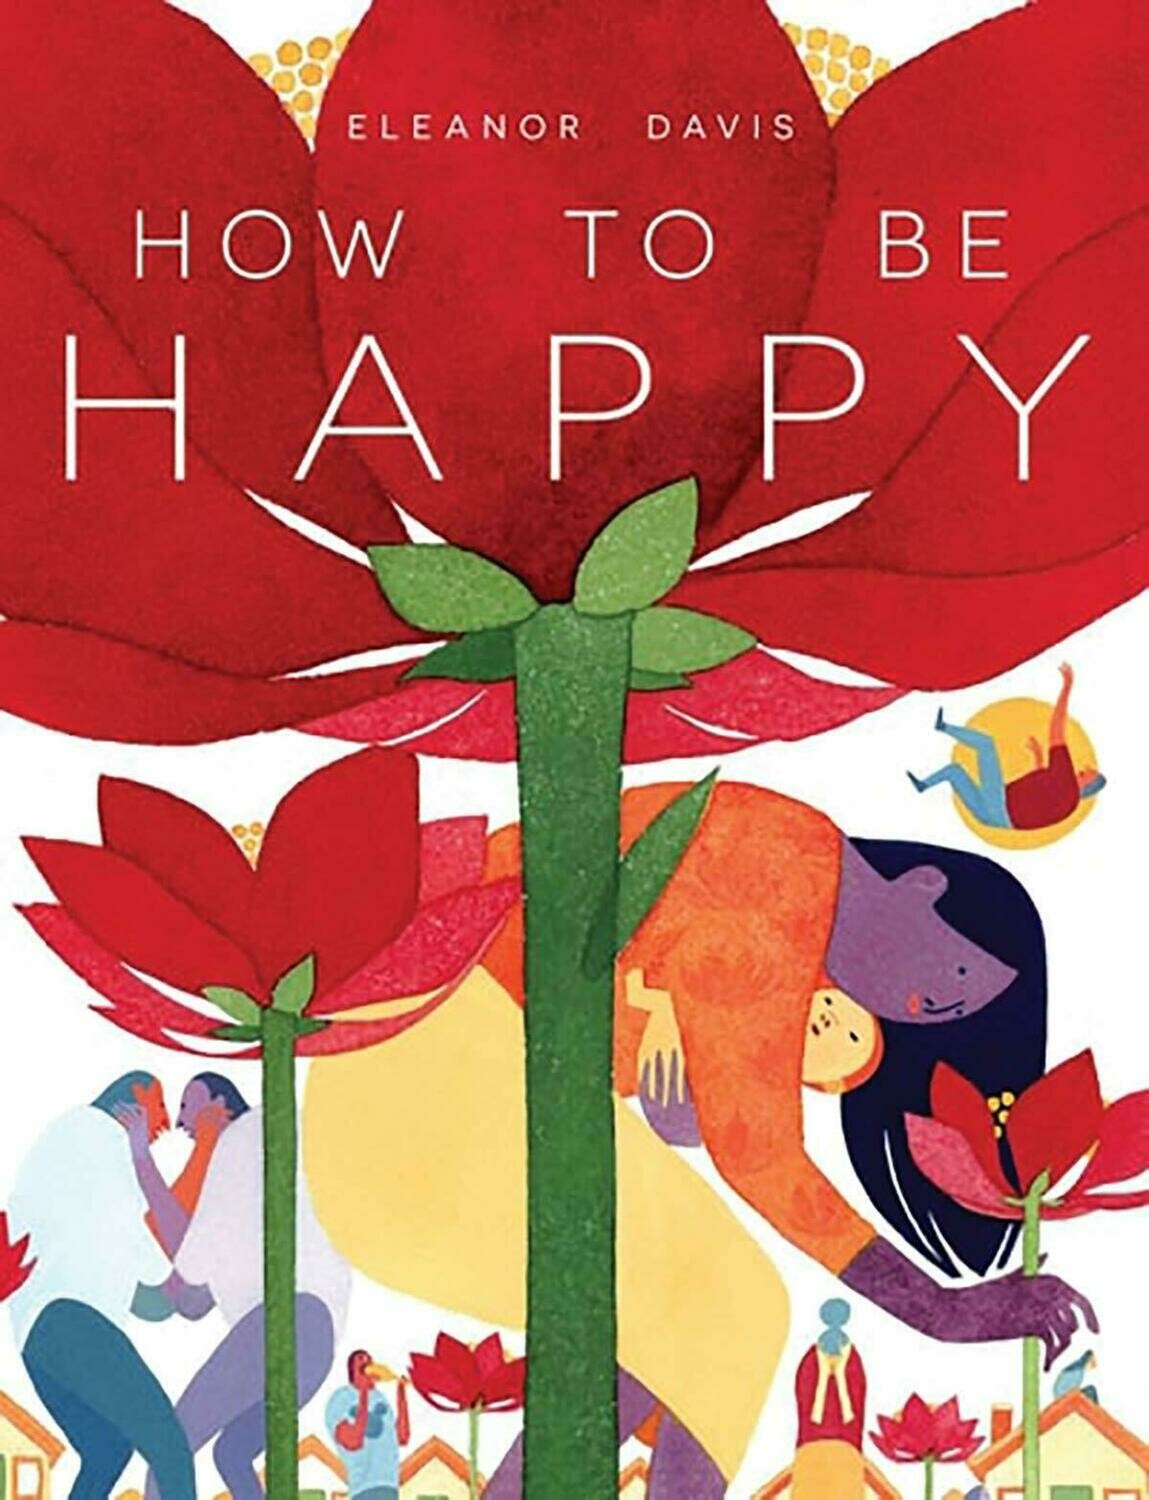 Eleanor Davis: How to be happy